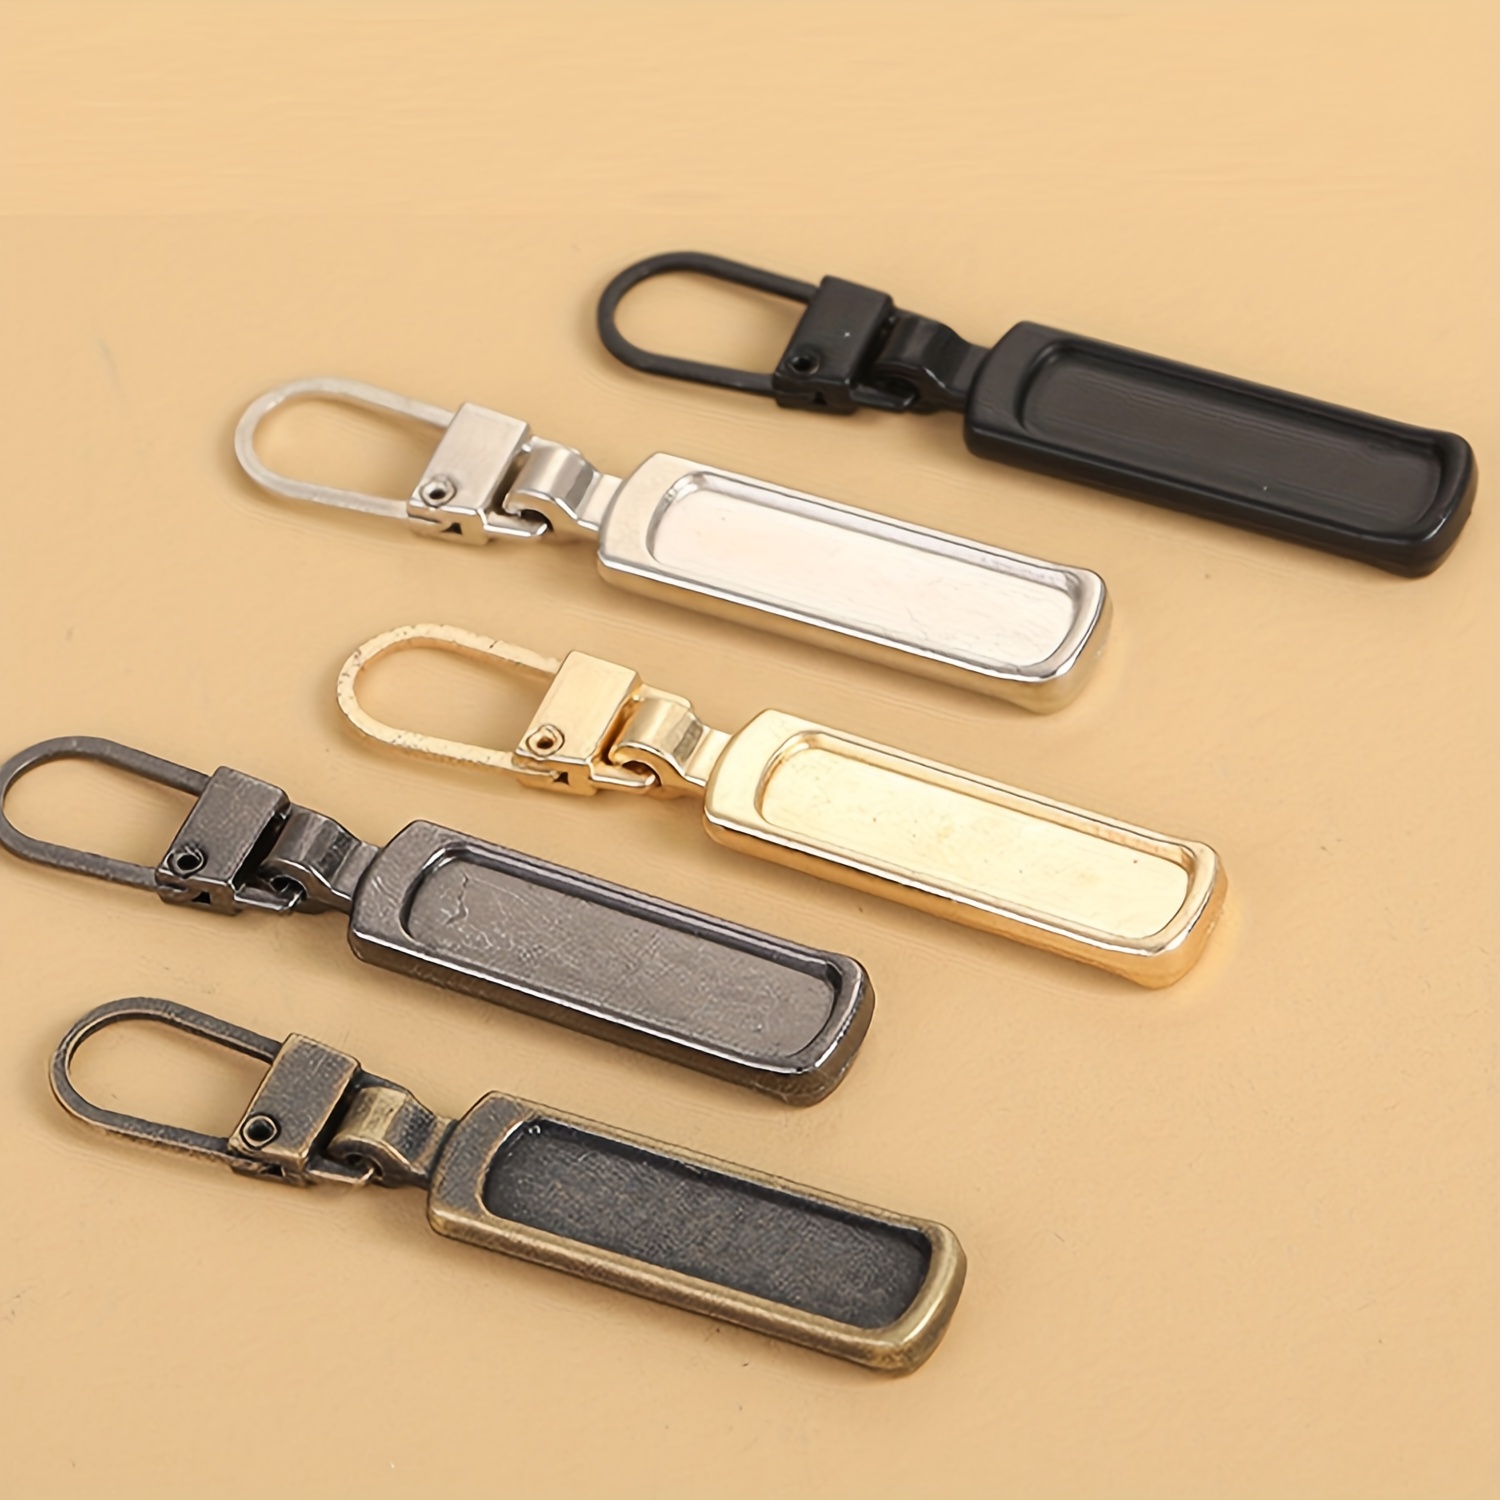  Zipper Pulls,zipper pull replacement,5PC Zipper Slider